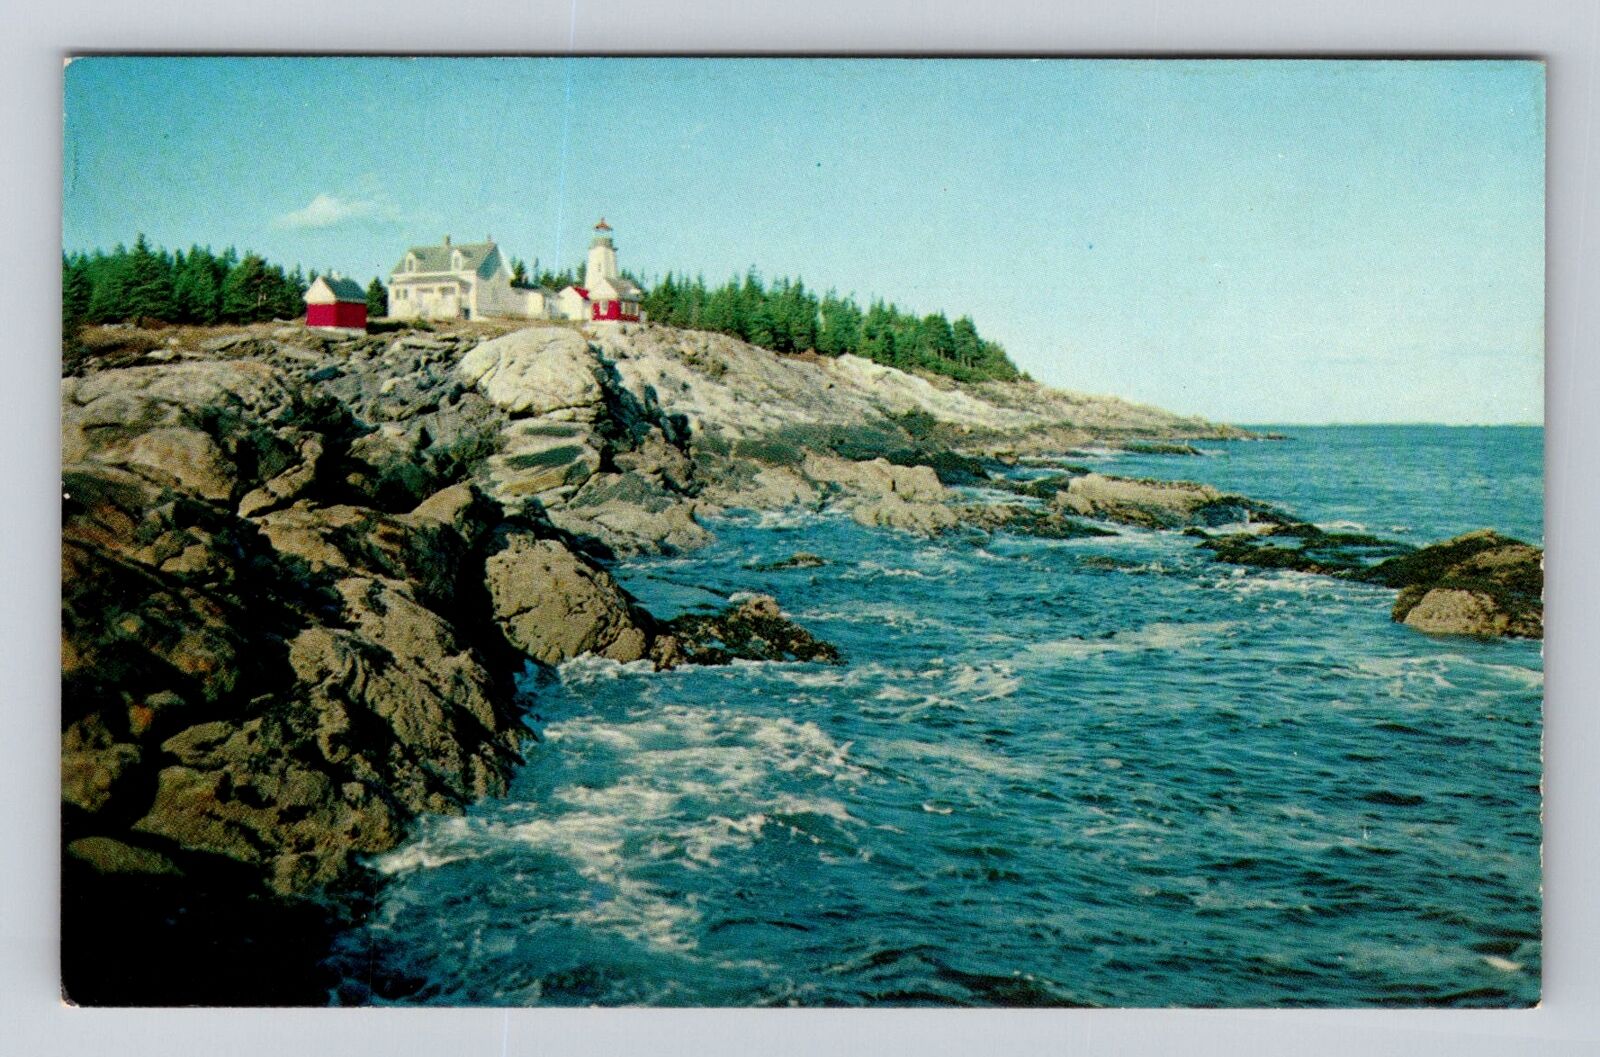 New Harbor ME-Maine, Pemaquid Light House, Vintage Souvenir Postcard